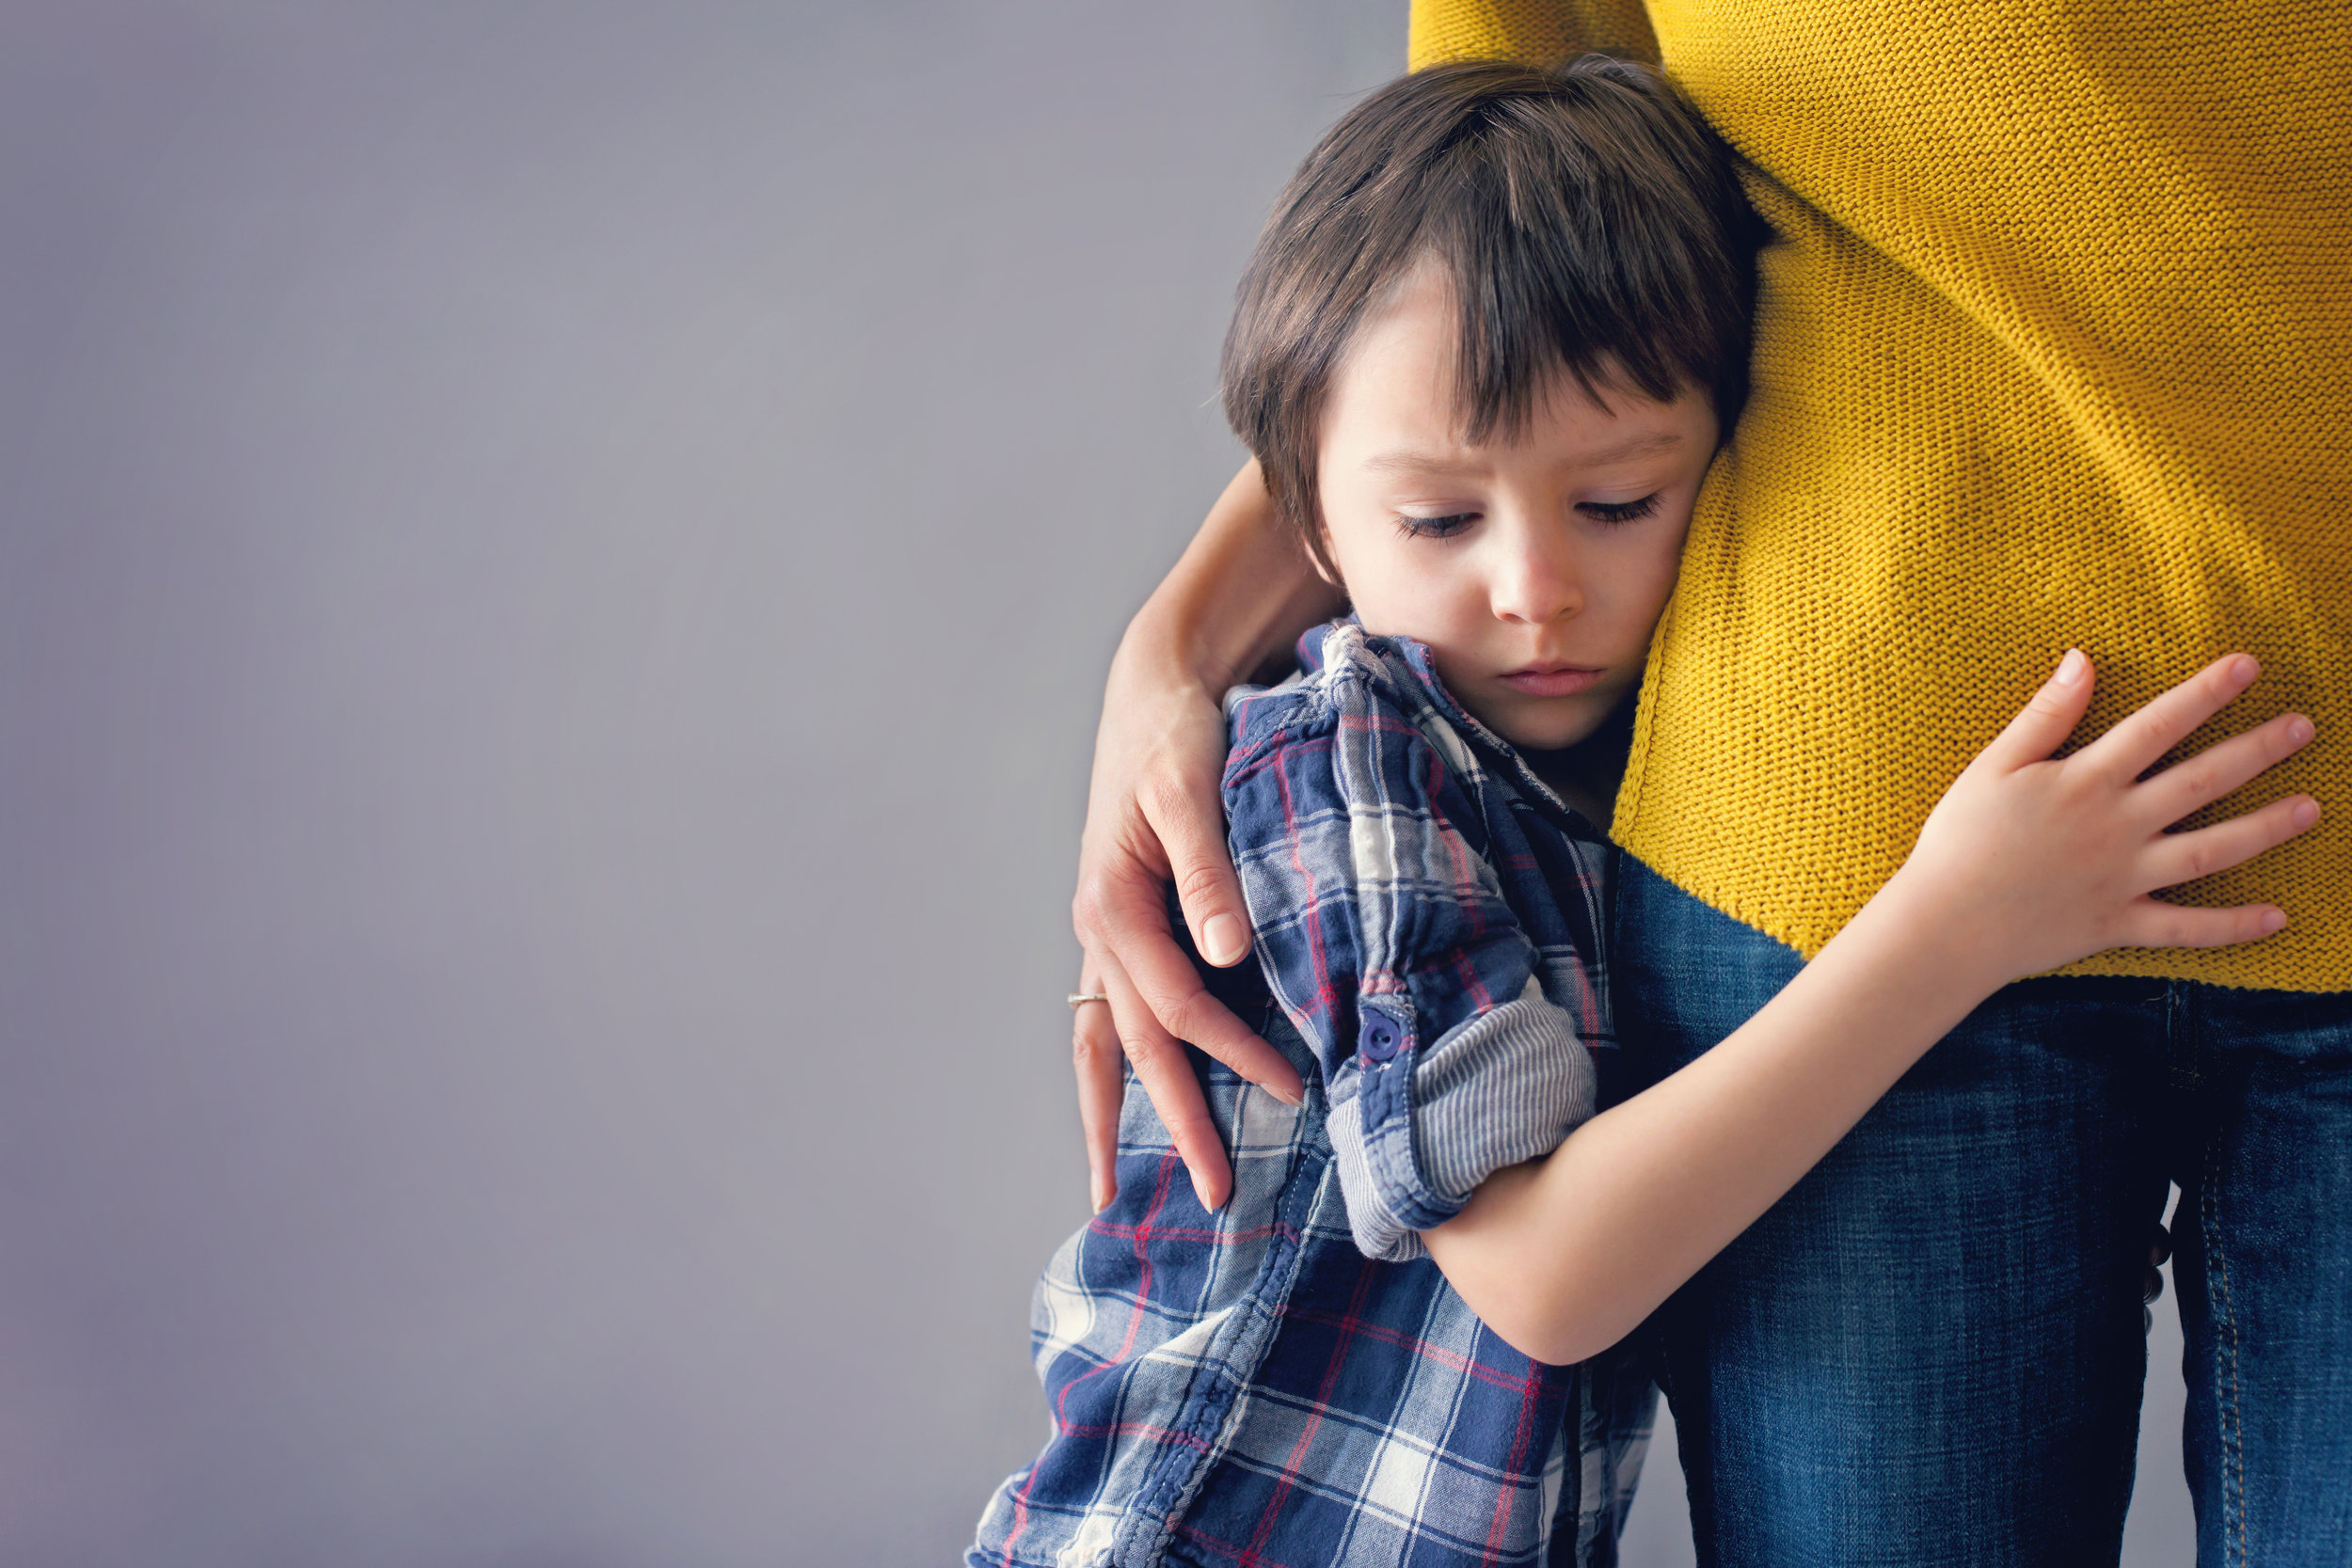 يمكن أن يؤثر نشاط المثانة المفرط بشكل خطير على حياة الطفل الاجتماعية والعاطفية، لذا يجب أن توفّر له الدعم الكامل.